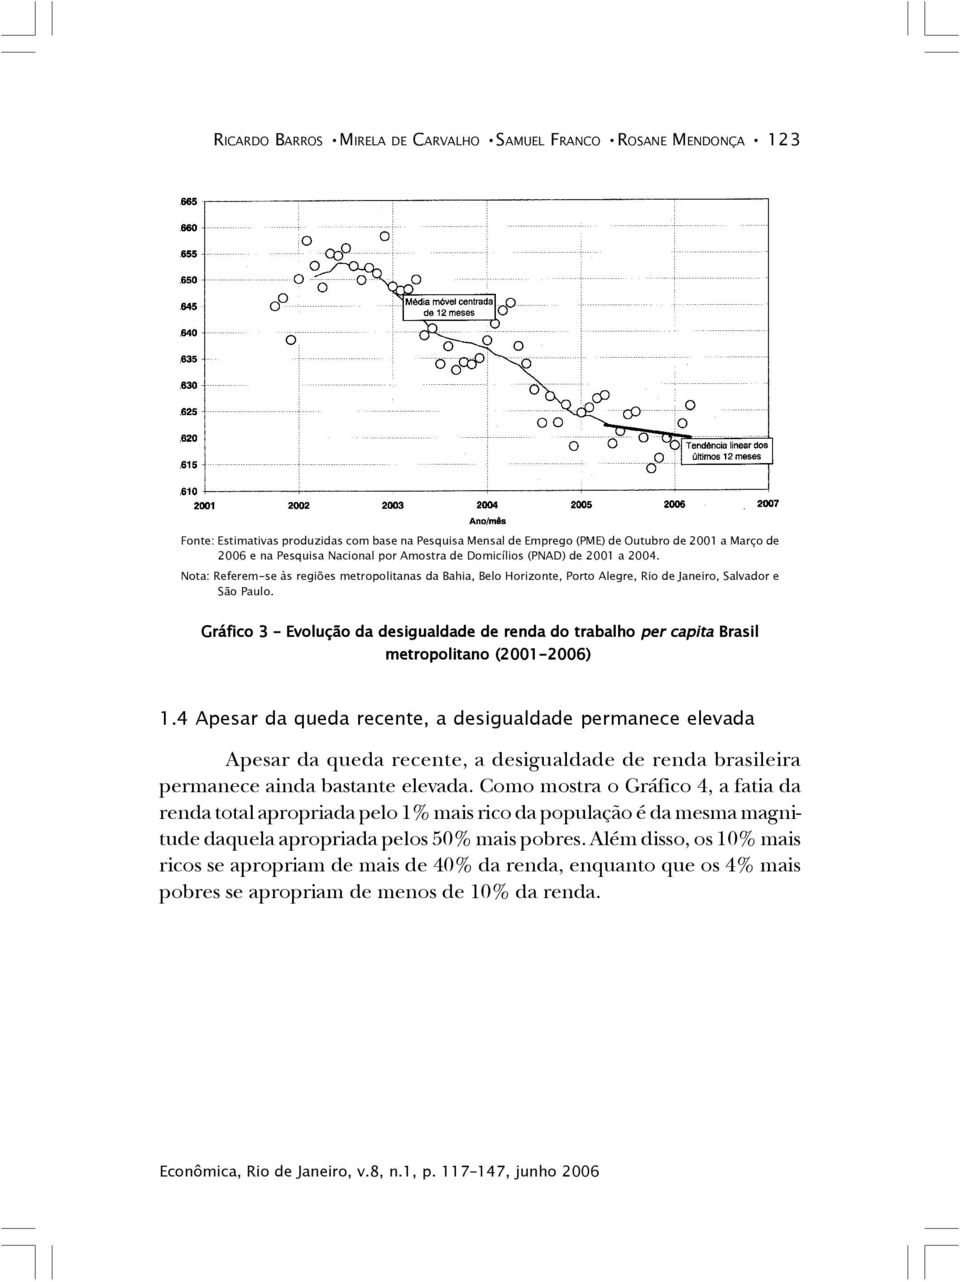 Gráfico 3 Evolução da desigualdade de renda do trabalho per capita Brasil metropolitano (2001-2006) 1.